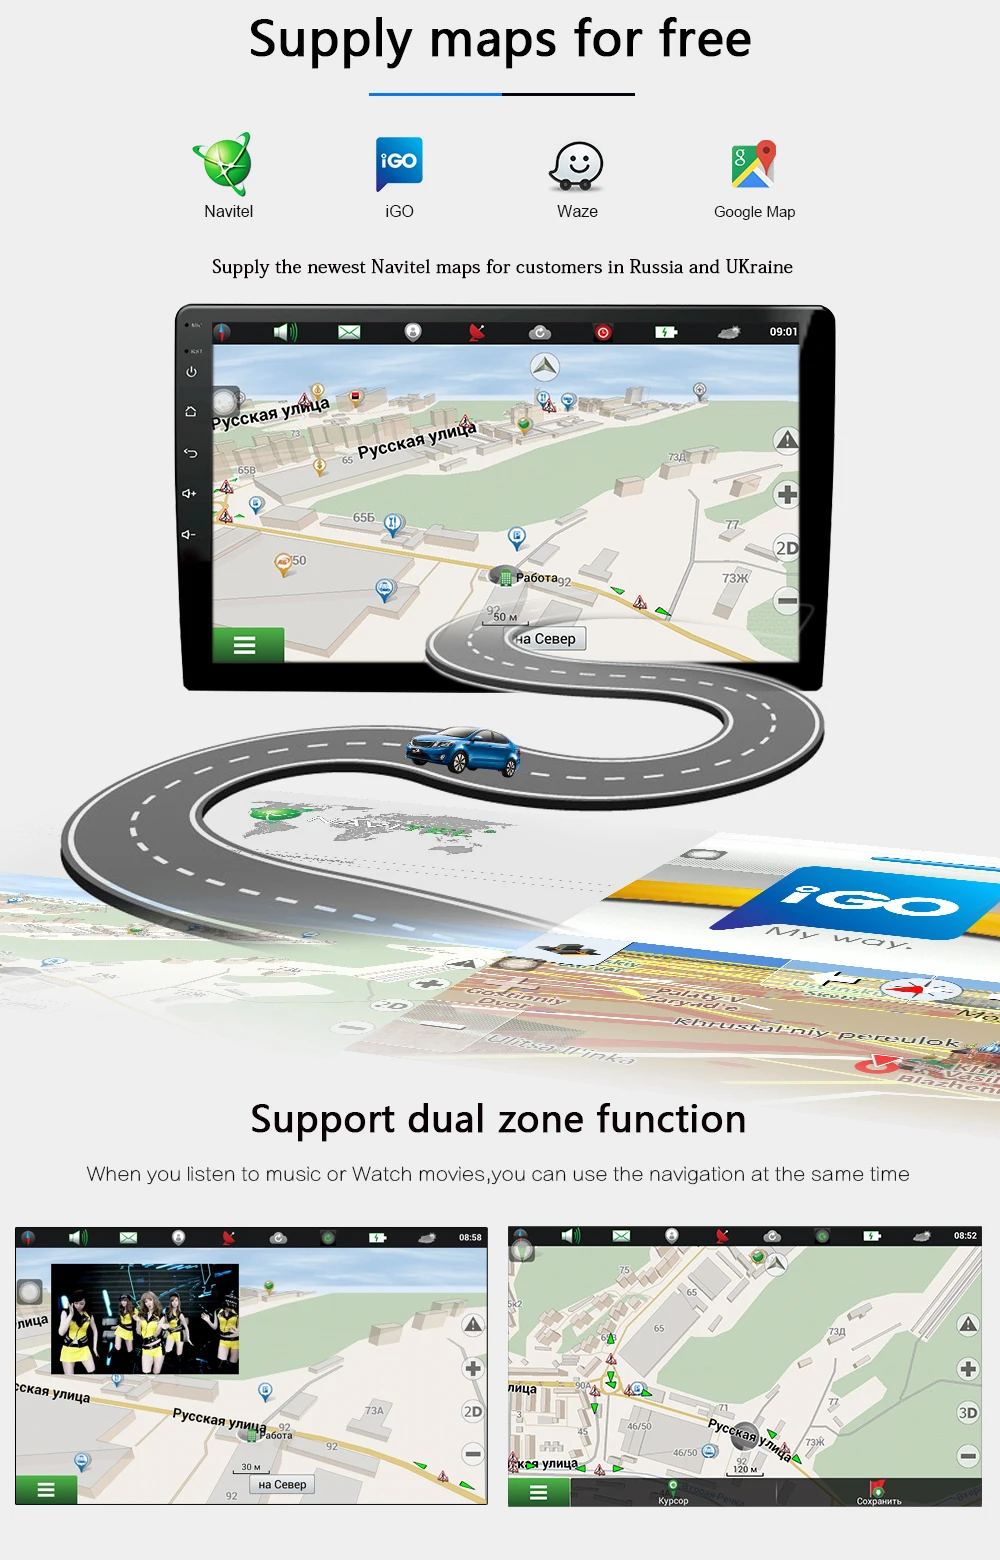 Штатная магнитола для Шевролет Круз Chevrolet Cruze J300 2009 2011 2012 2013 Android 9.0, до 4-ЯДЕР, DSP 2DIN автомагнитола 2 DIN DVD GPS мультимедиа автомобиля головное устройс тво